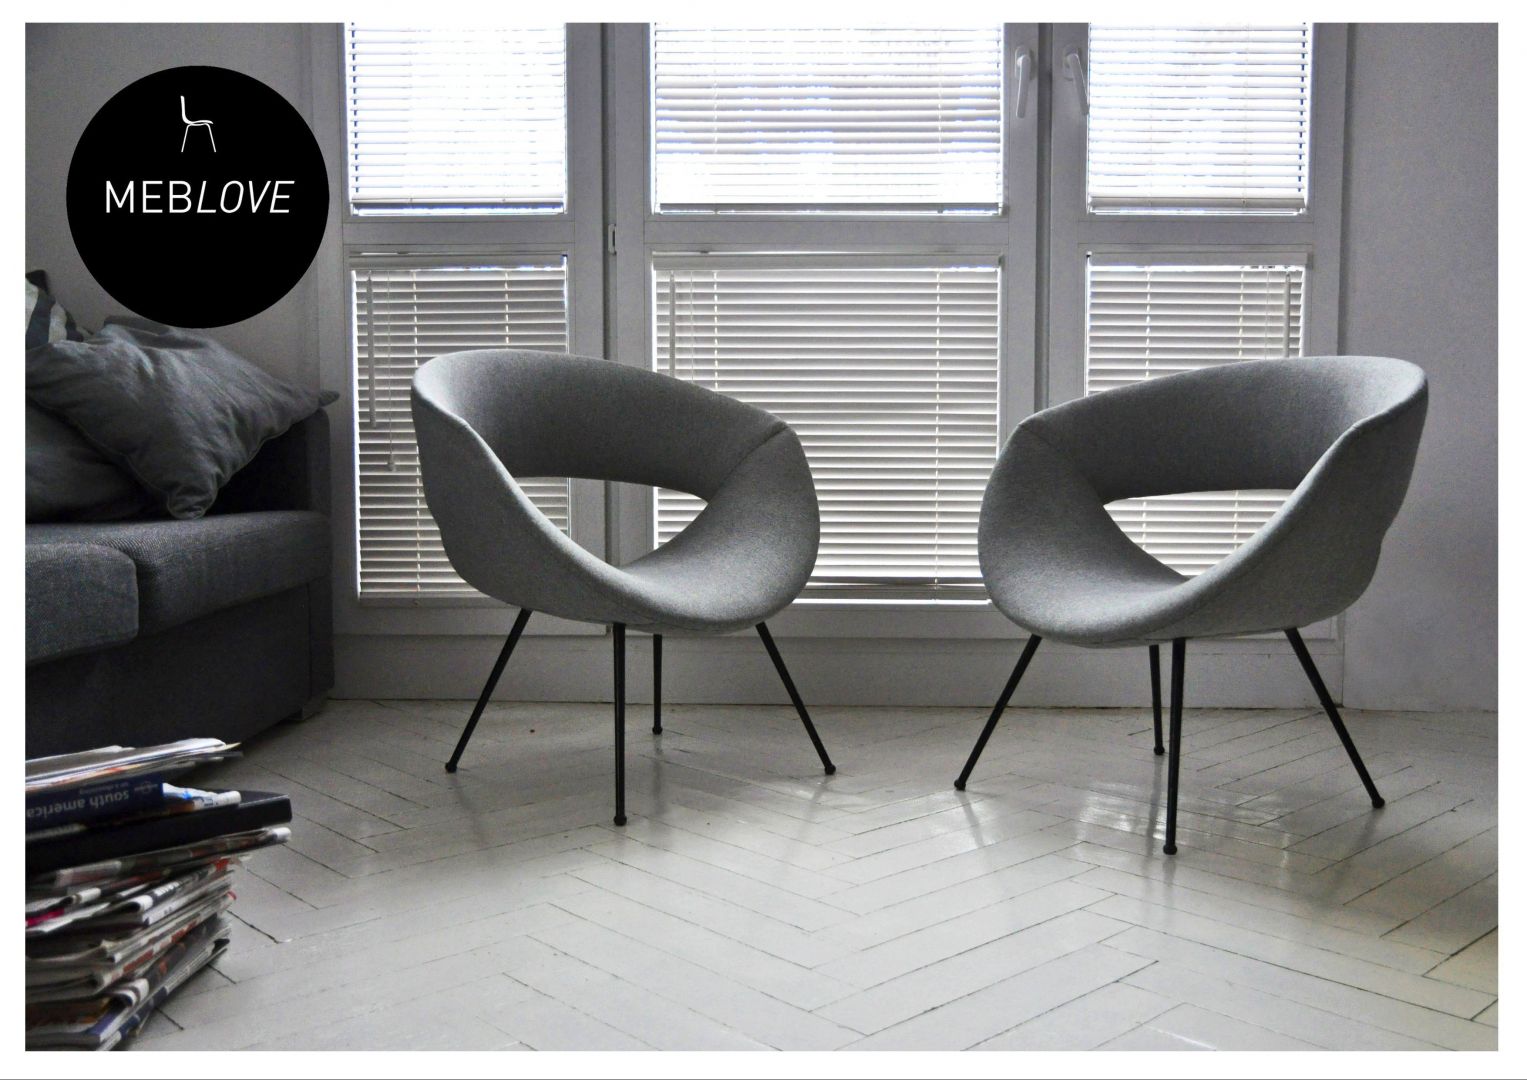 Designerskie fotele projektu Meblowe to odnowione modele sprzed lat. Fot. Archiwum projektanta